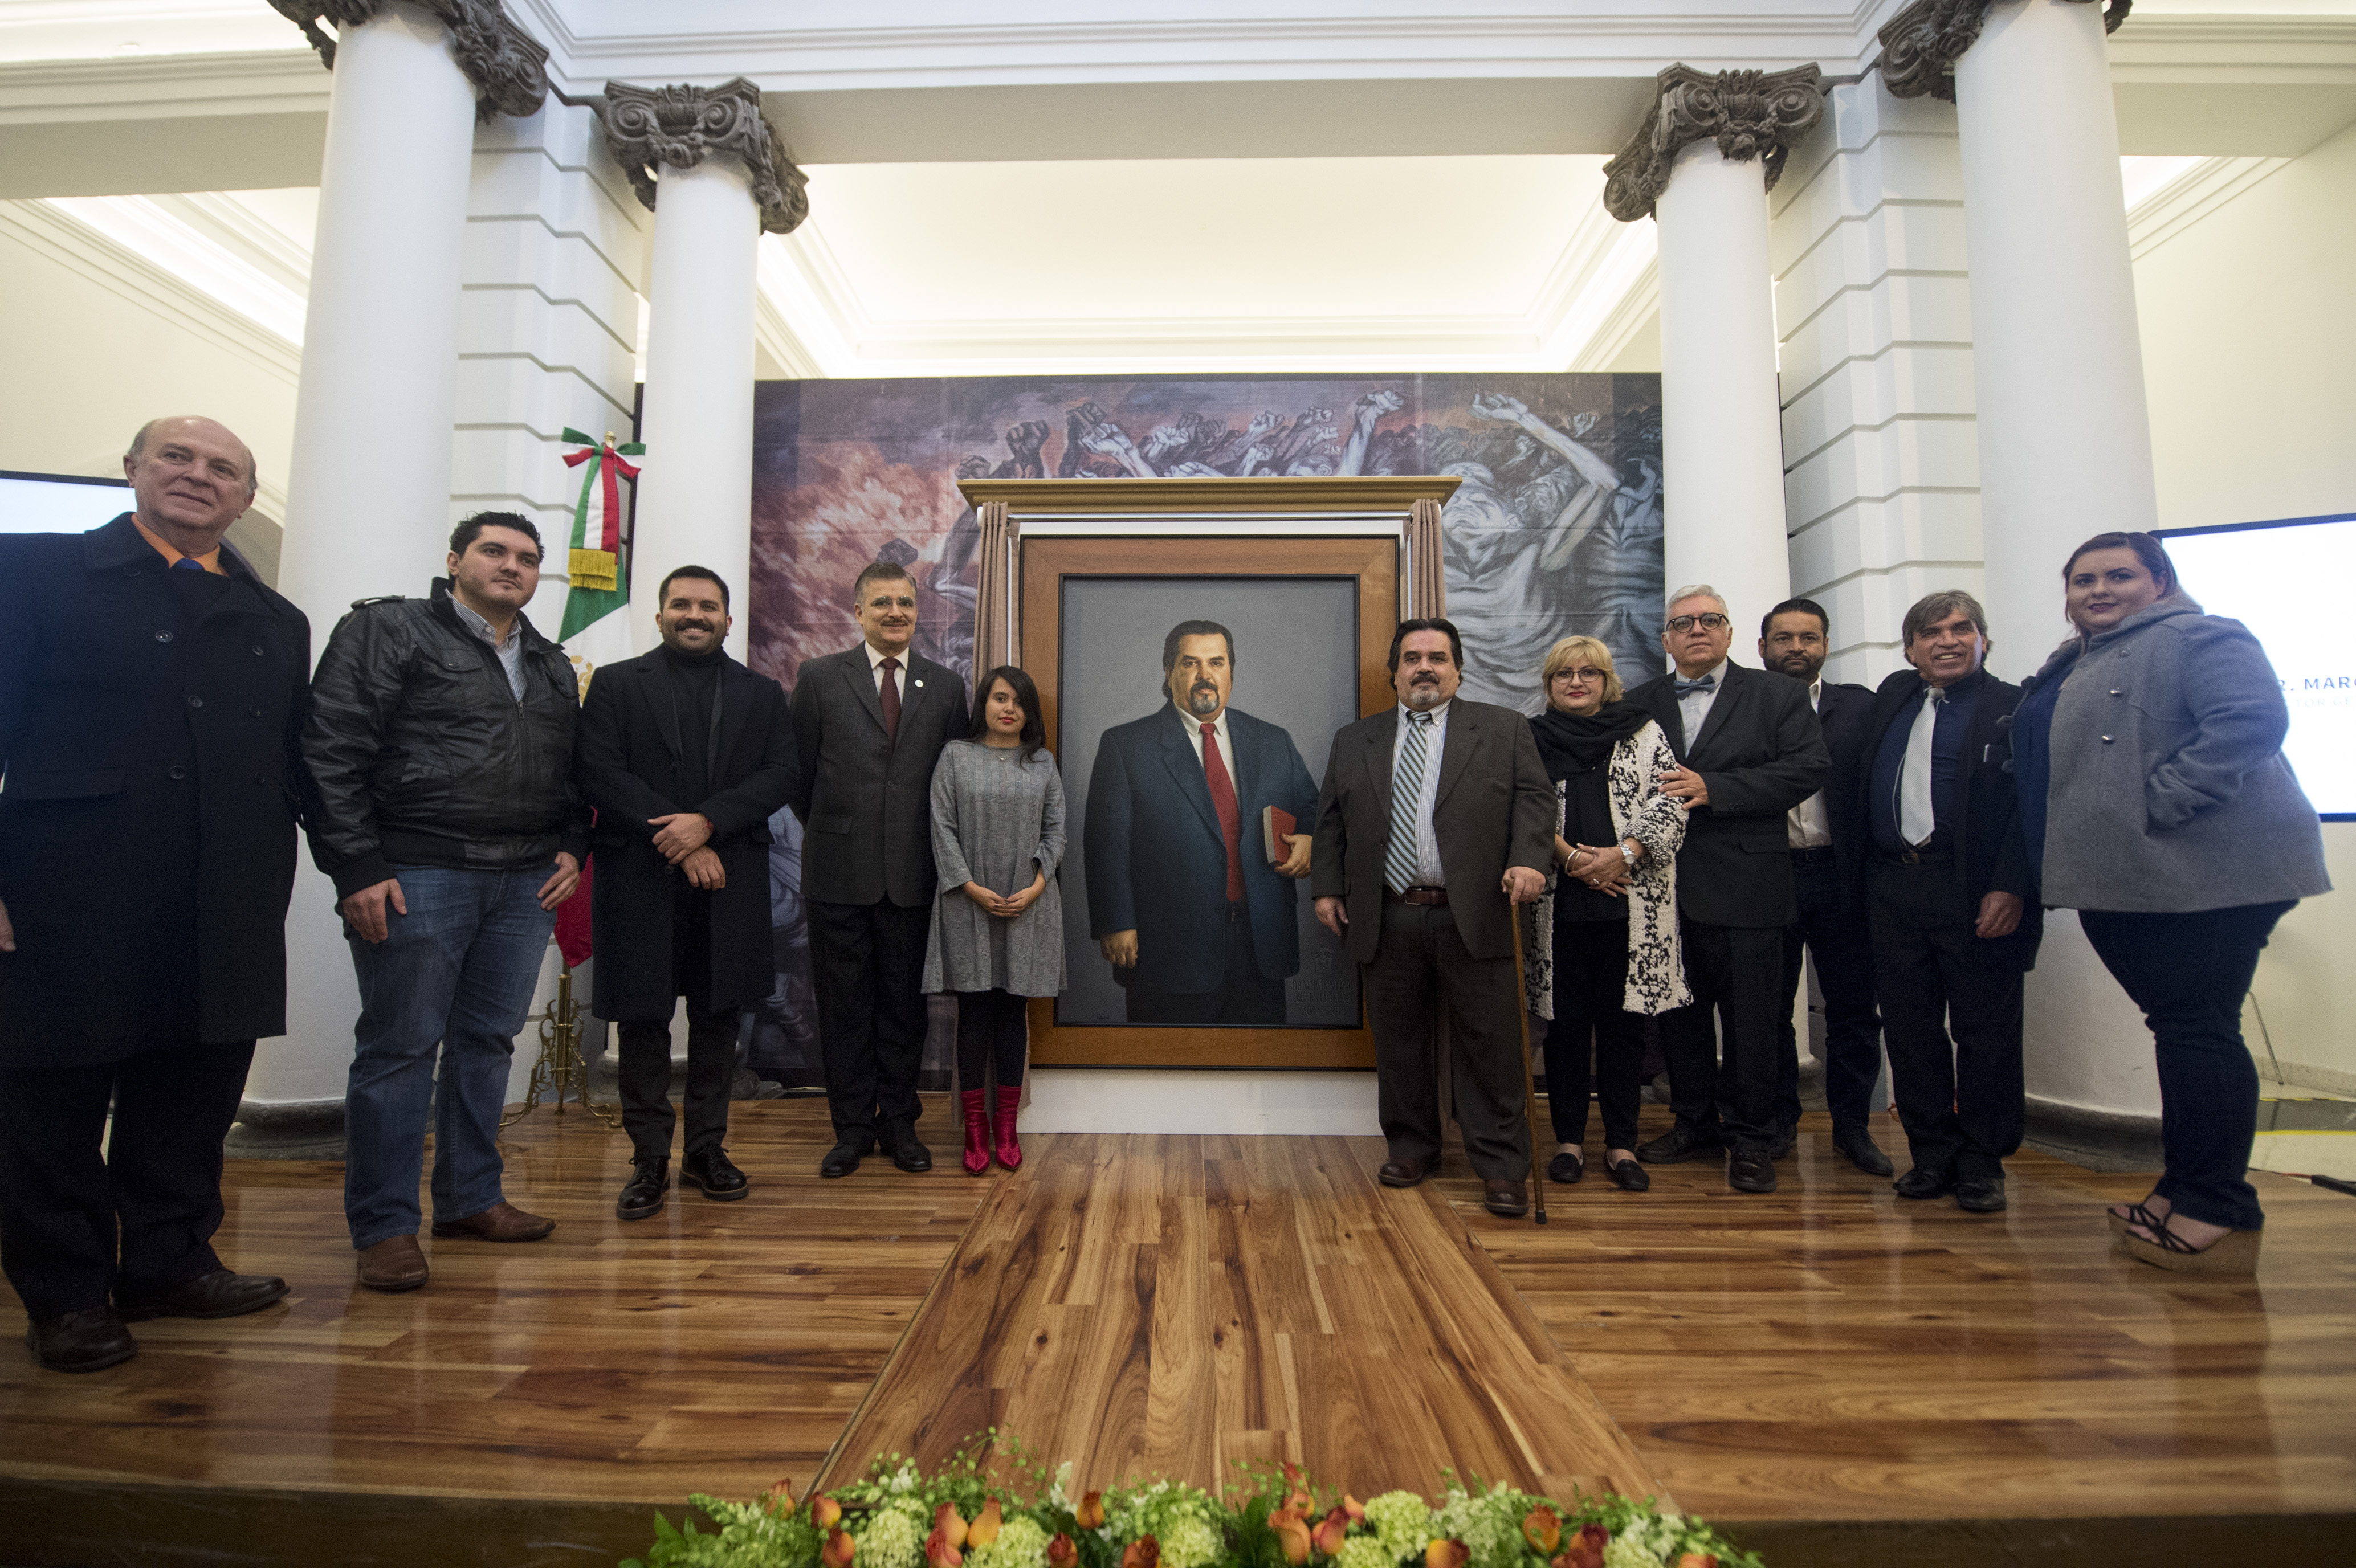 Autoridades universitarias y familiares del Dr. Cortés Guardado asistieron a la ceremonia